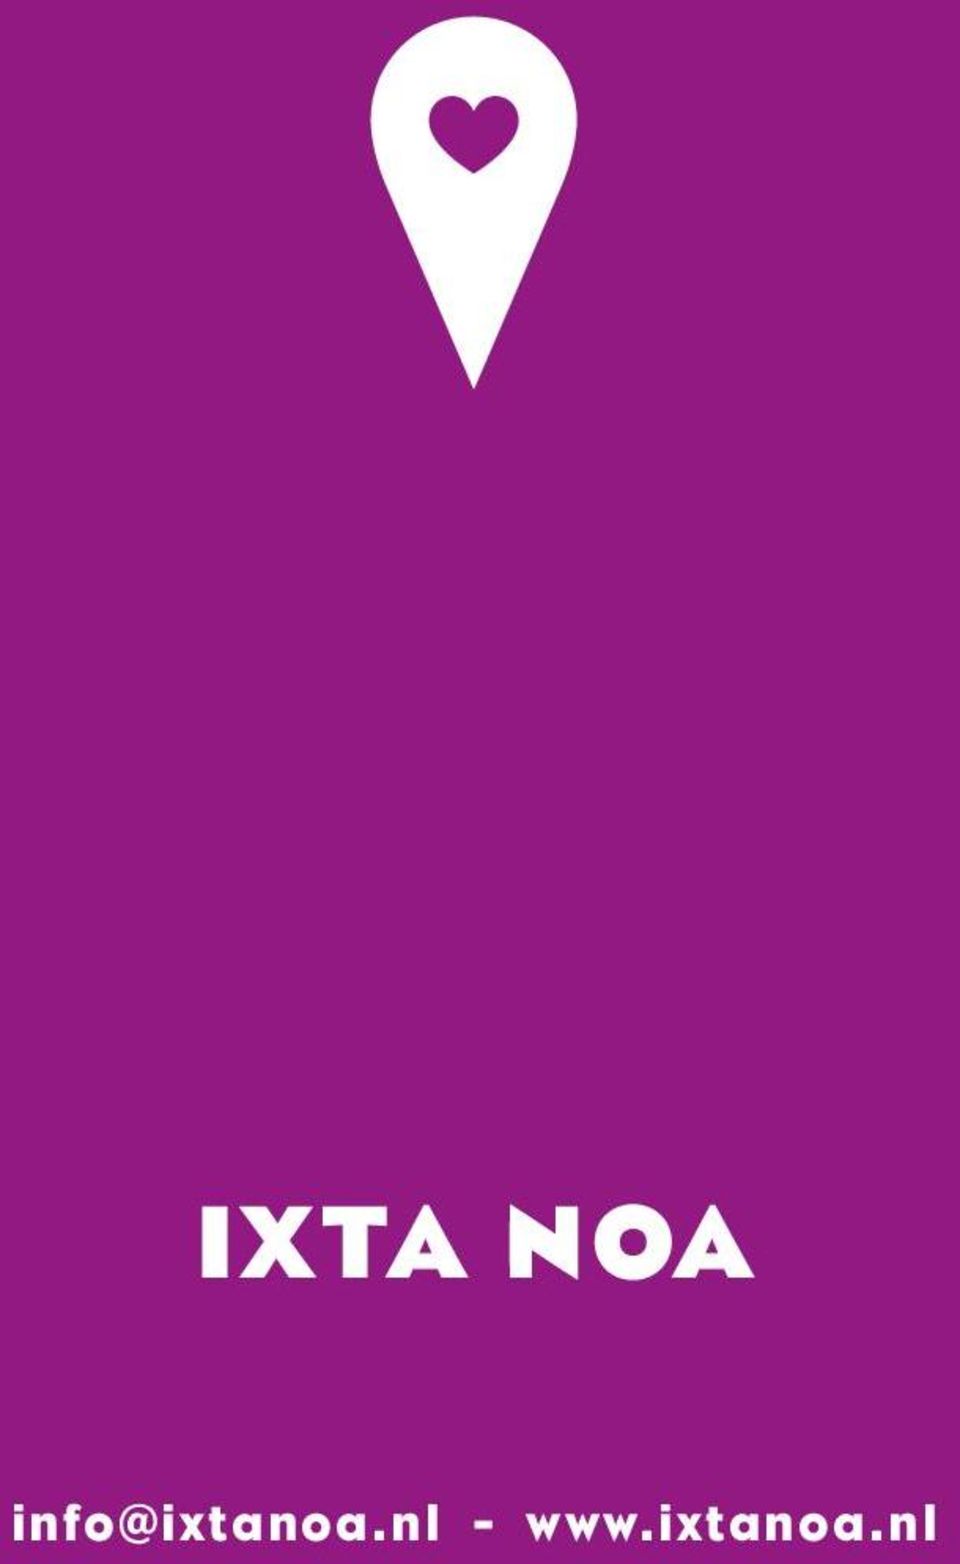 Afbeelding bevat logo van Ixta Noa evenals hun mail adress info@ixtanoa.nl en website www.ixtanoa.nl